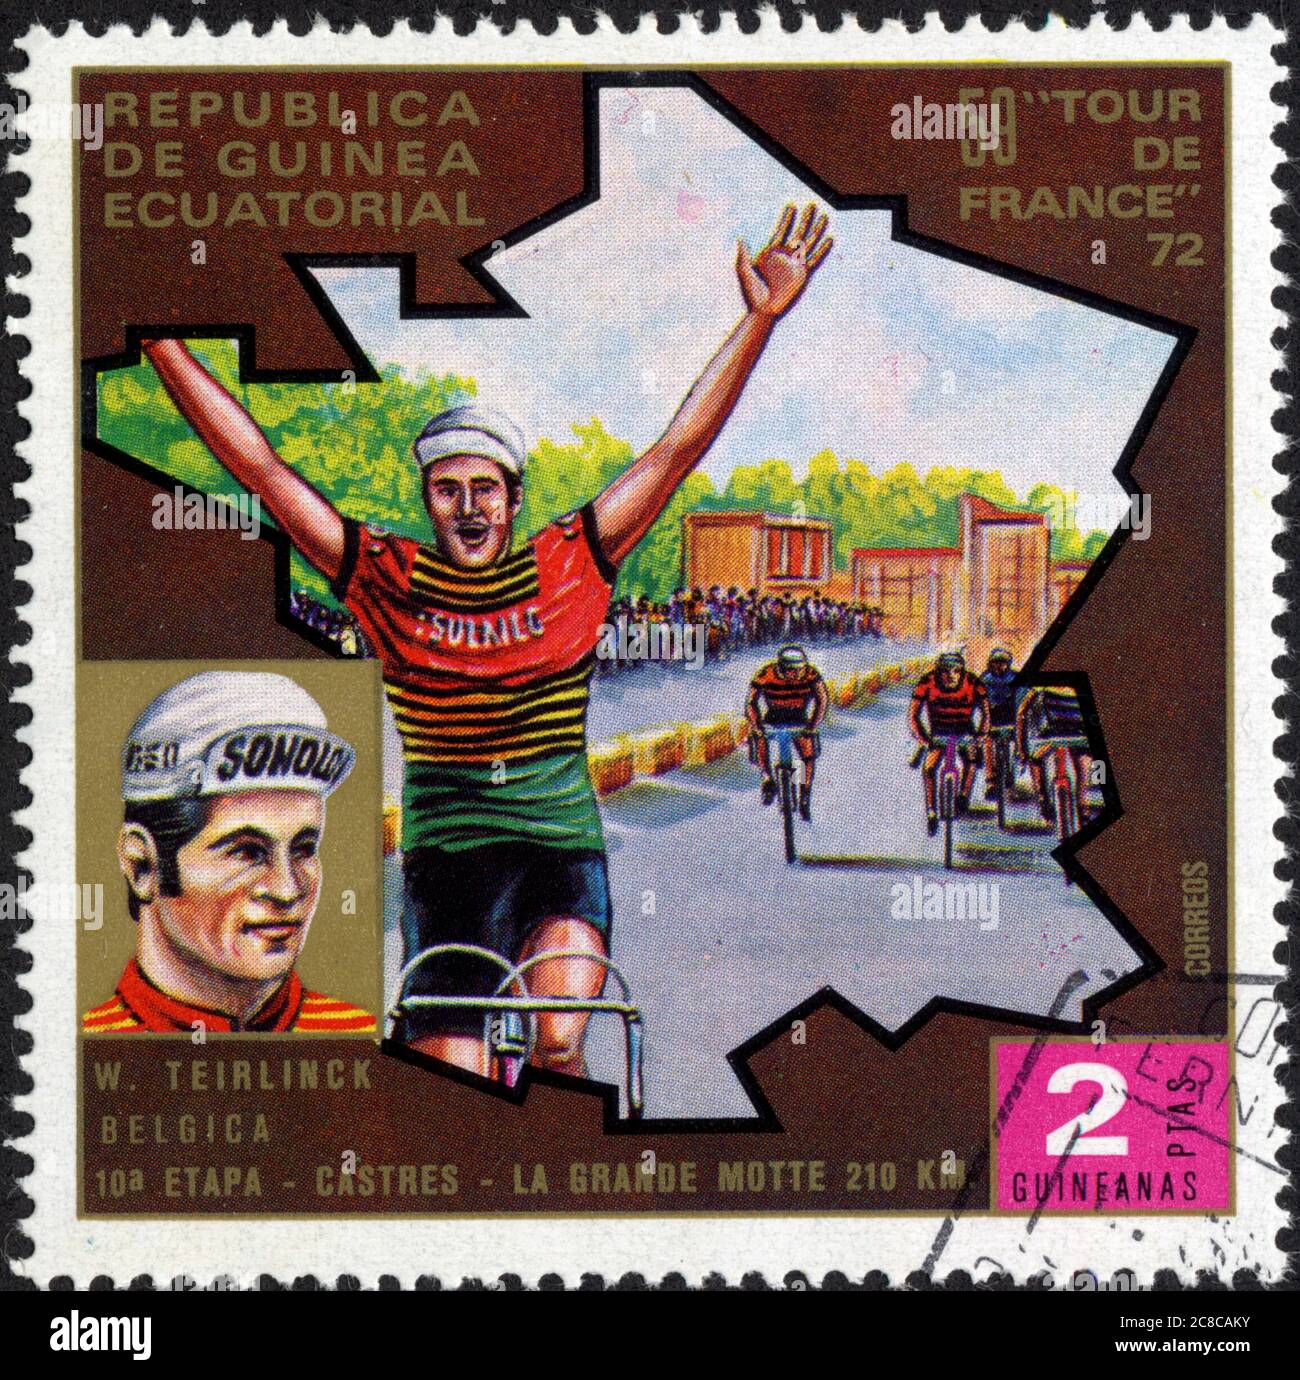 Republica de Guinea Ecuatorial. 59 Tour de France 72. W. Teirlinck. Belgica. 10a etapa. Castres- la grande Motte 210 km. 2 guineane Ptas. Correos Foto Stock